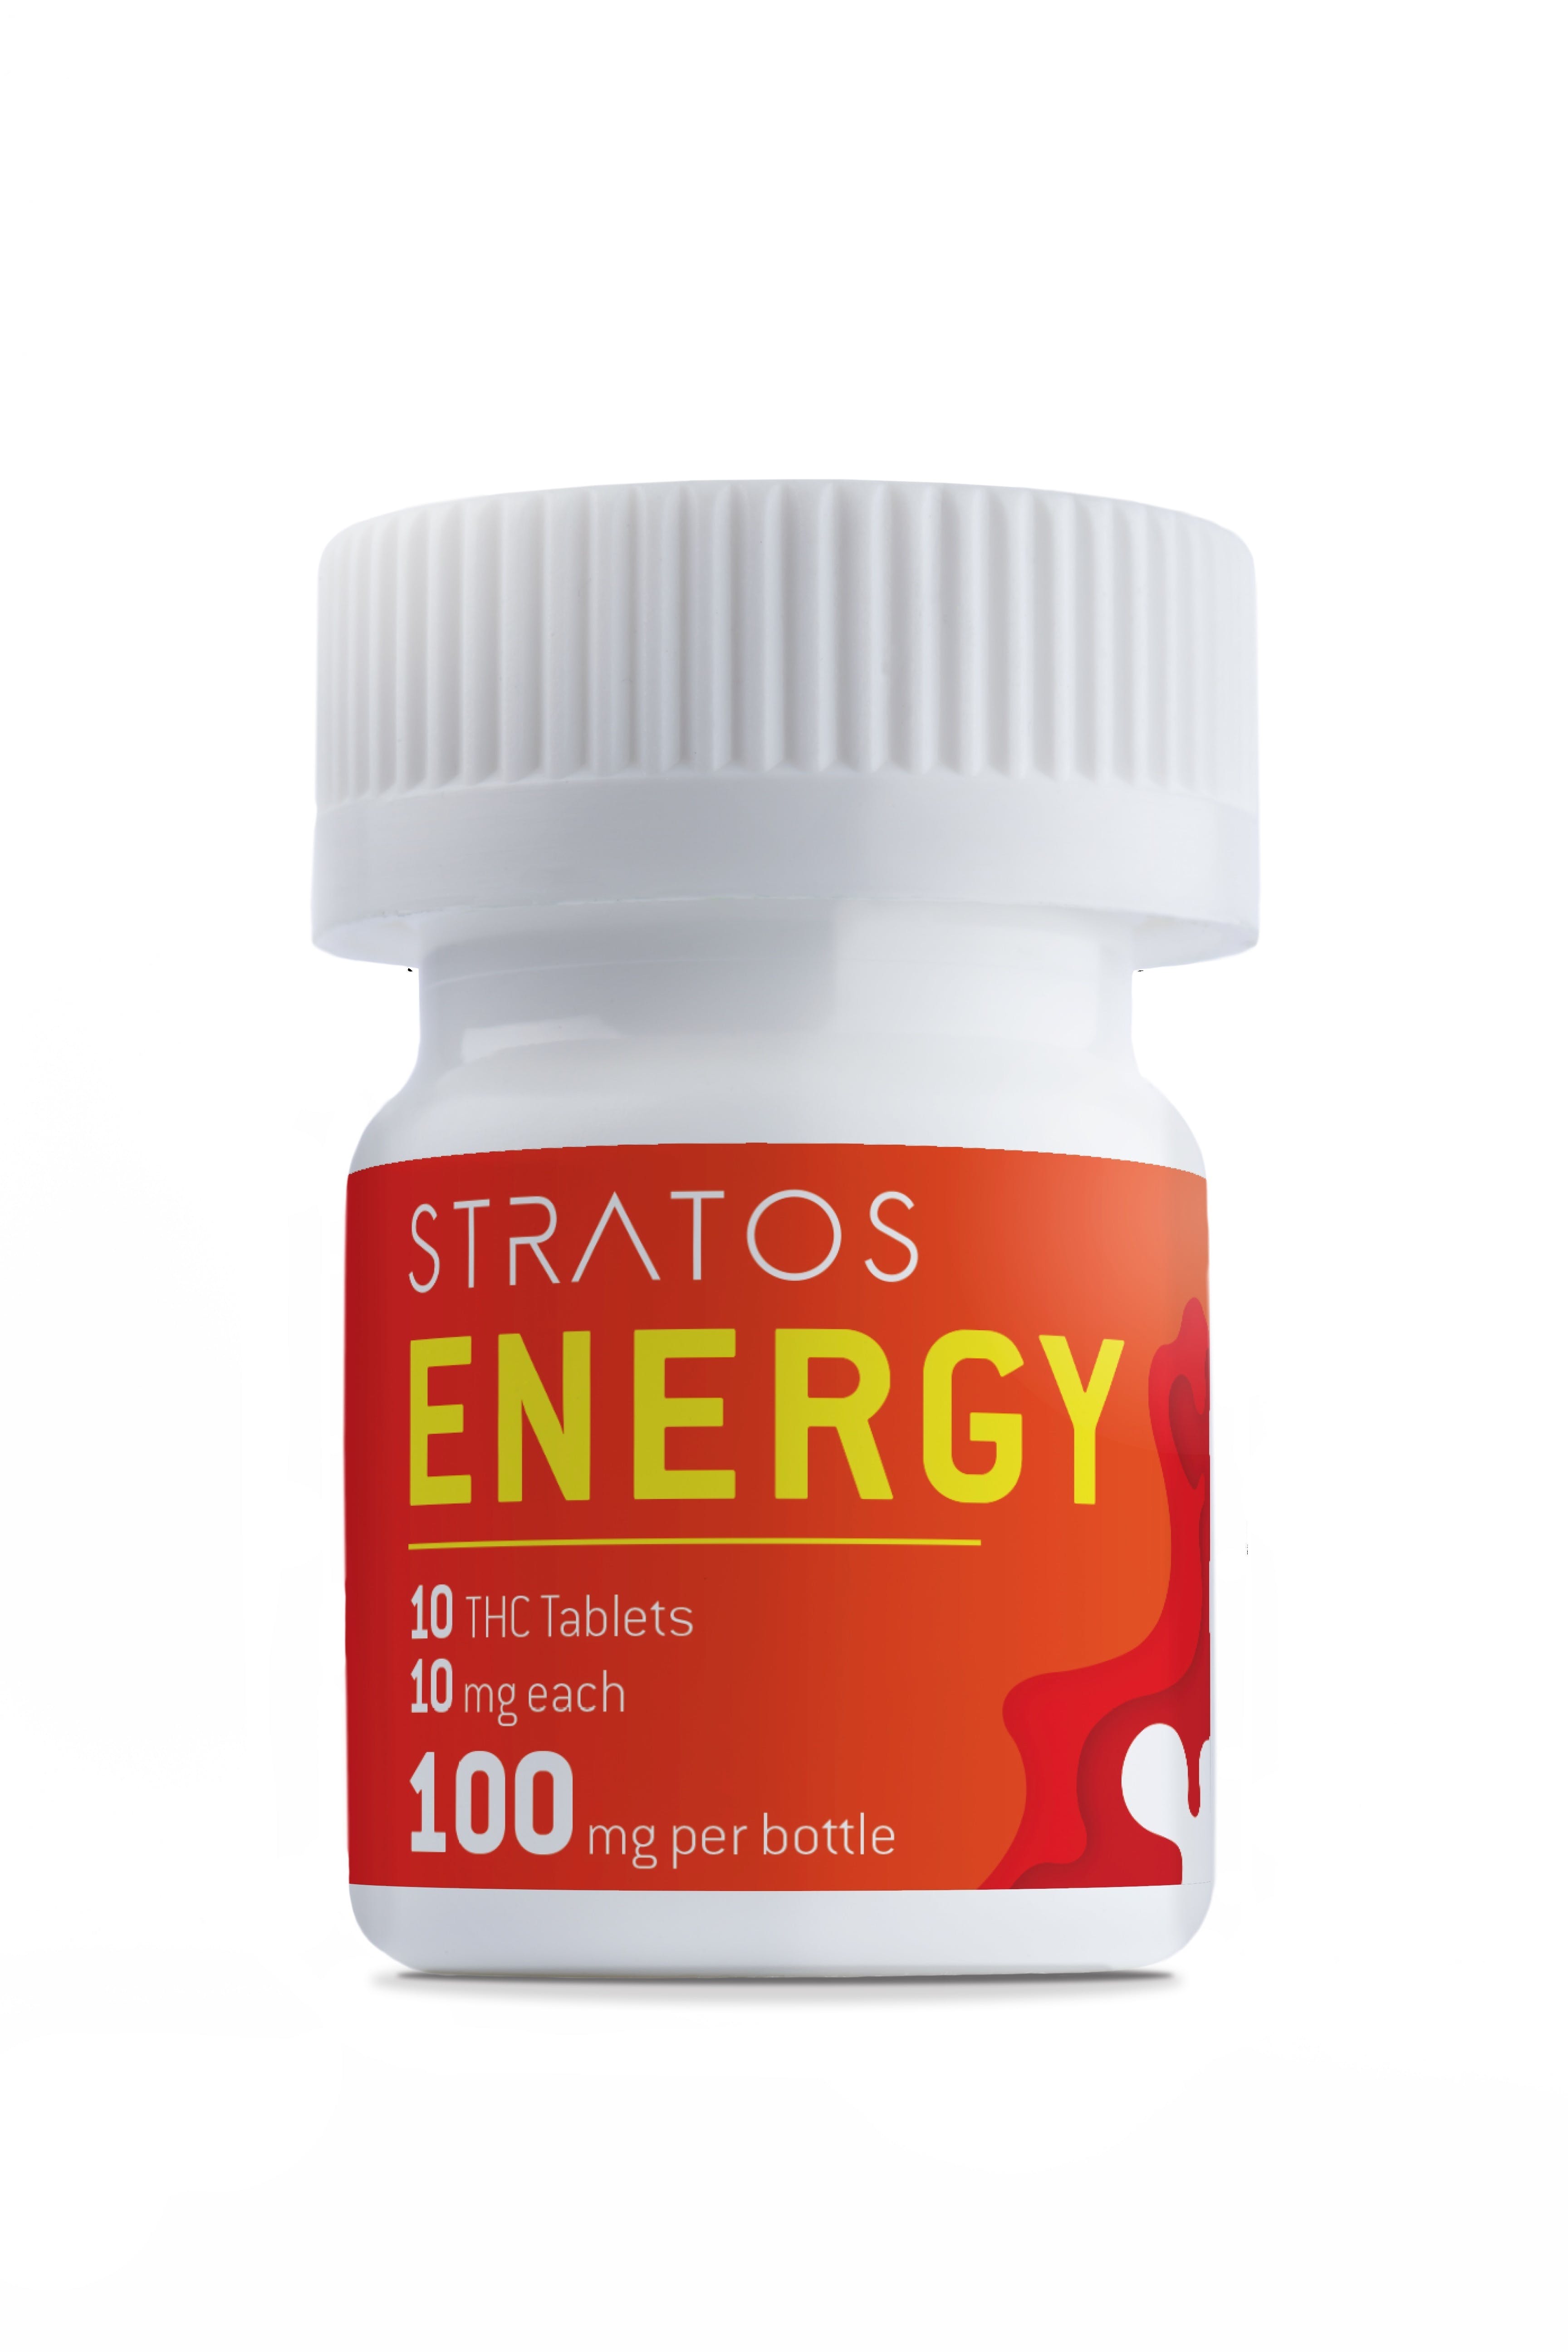 edible-stratos-stratos-energy-tablets